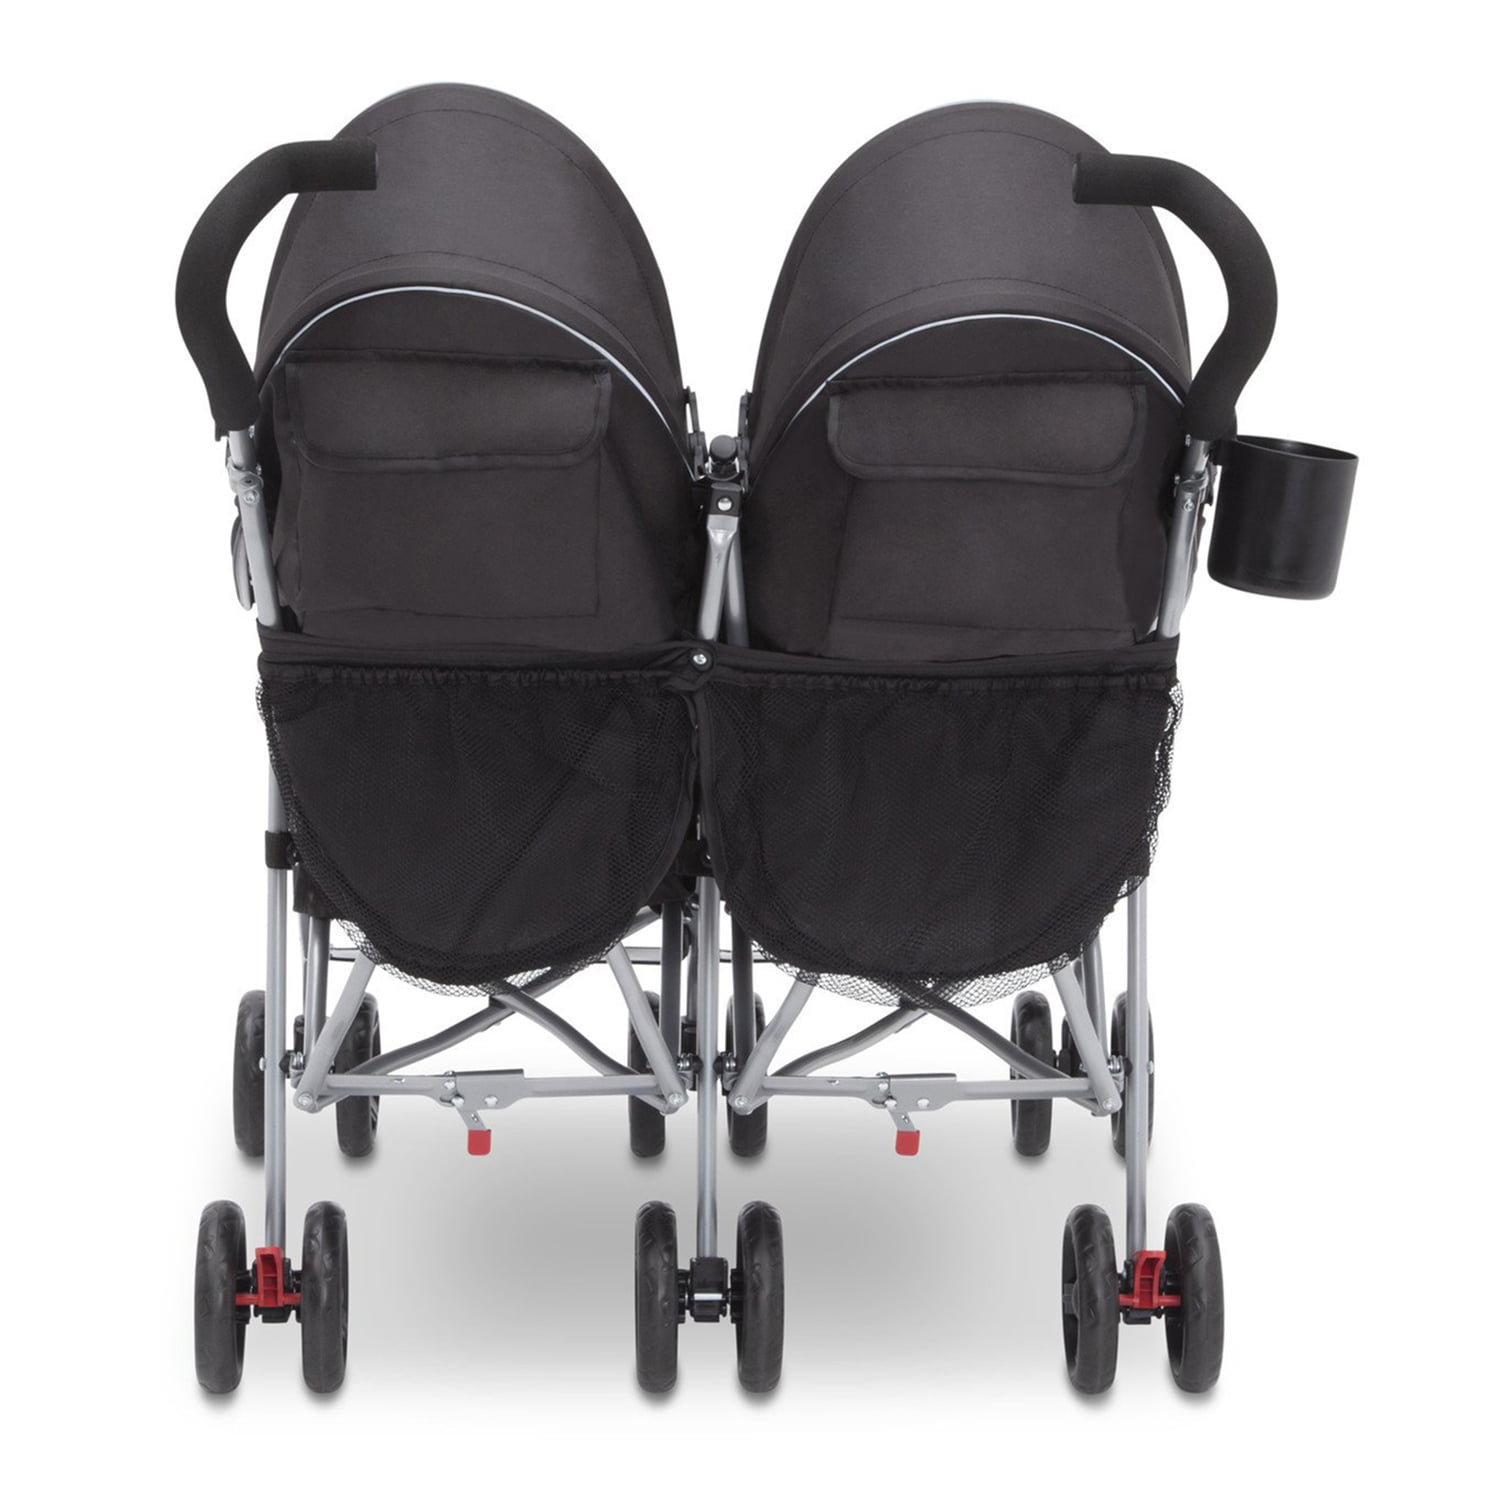 delta lx side by side double stroller